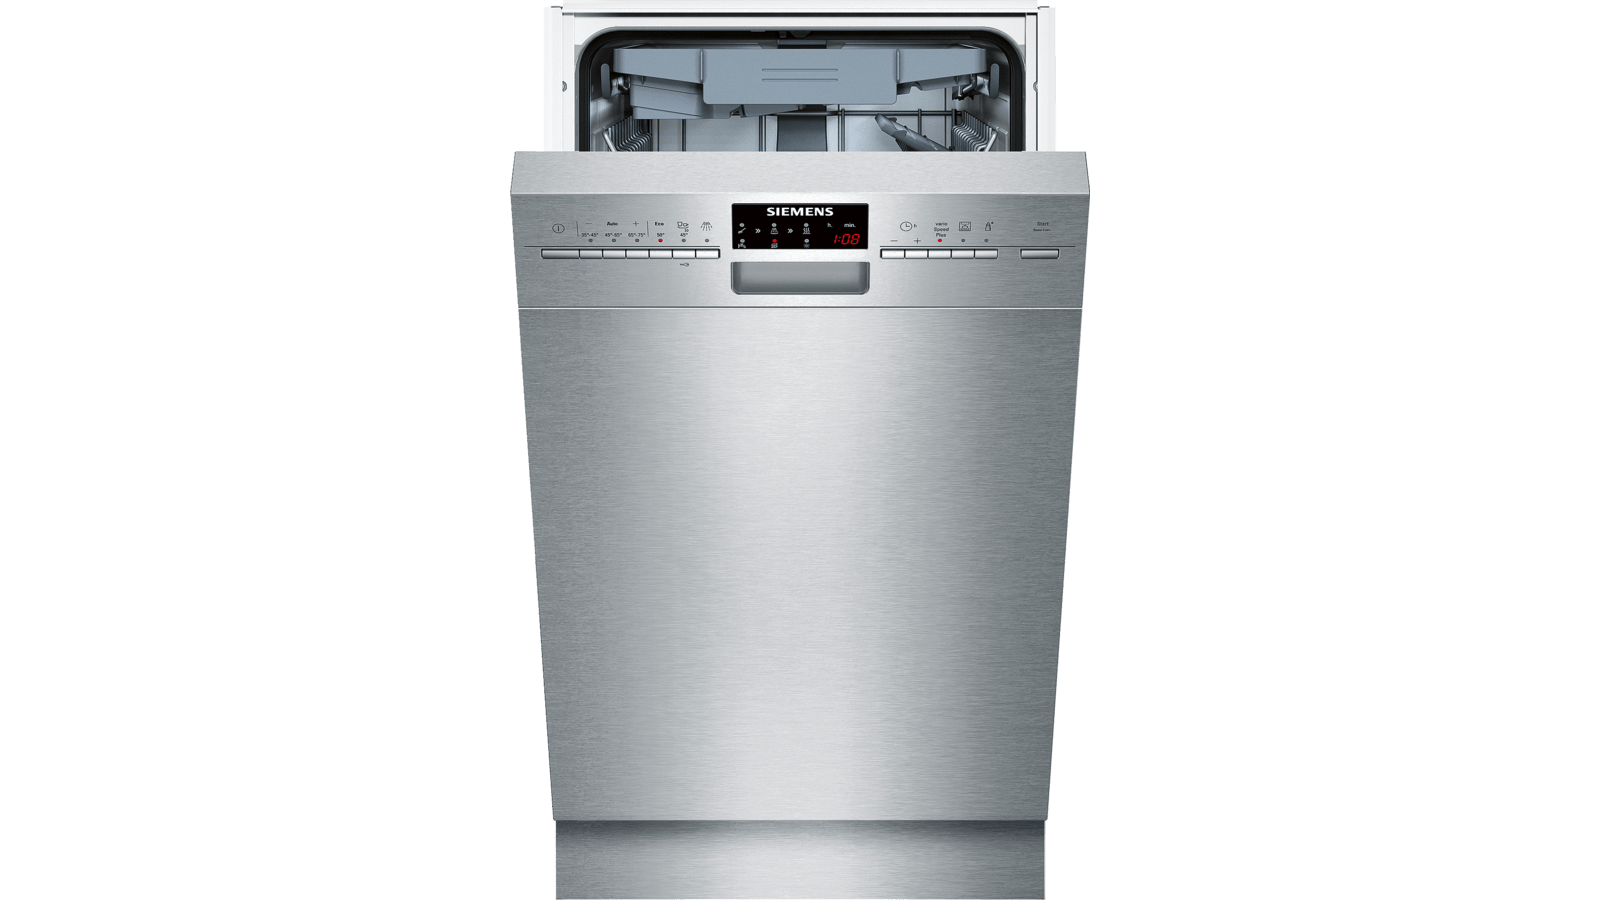 Посудомоечная машина Siemens SR 256i00 te. Siemens iq500 посудомоечная машина. Посудомойка Сименс Электролюкс. Посудомойка Siemens SR 25226/06. Посудомоечная машина рейтинг цена качество 60